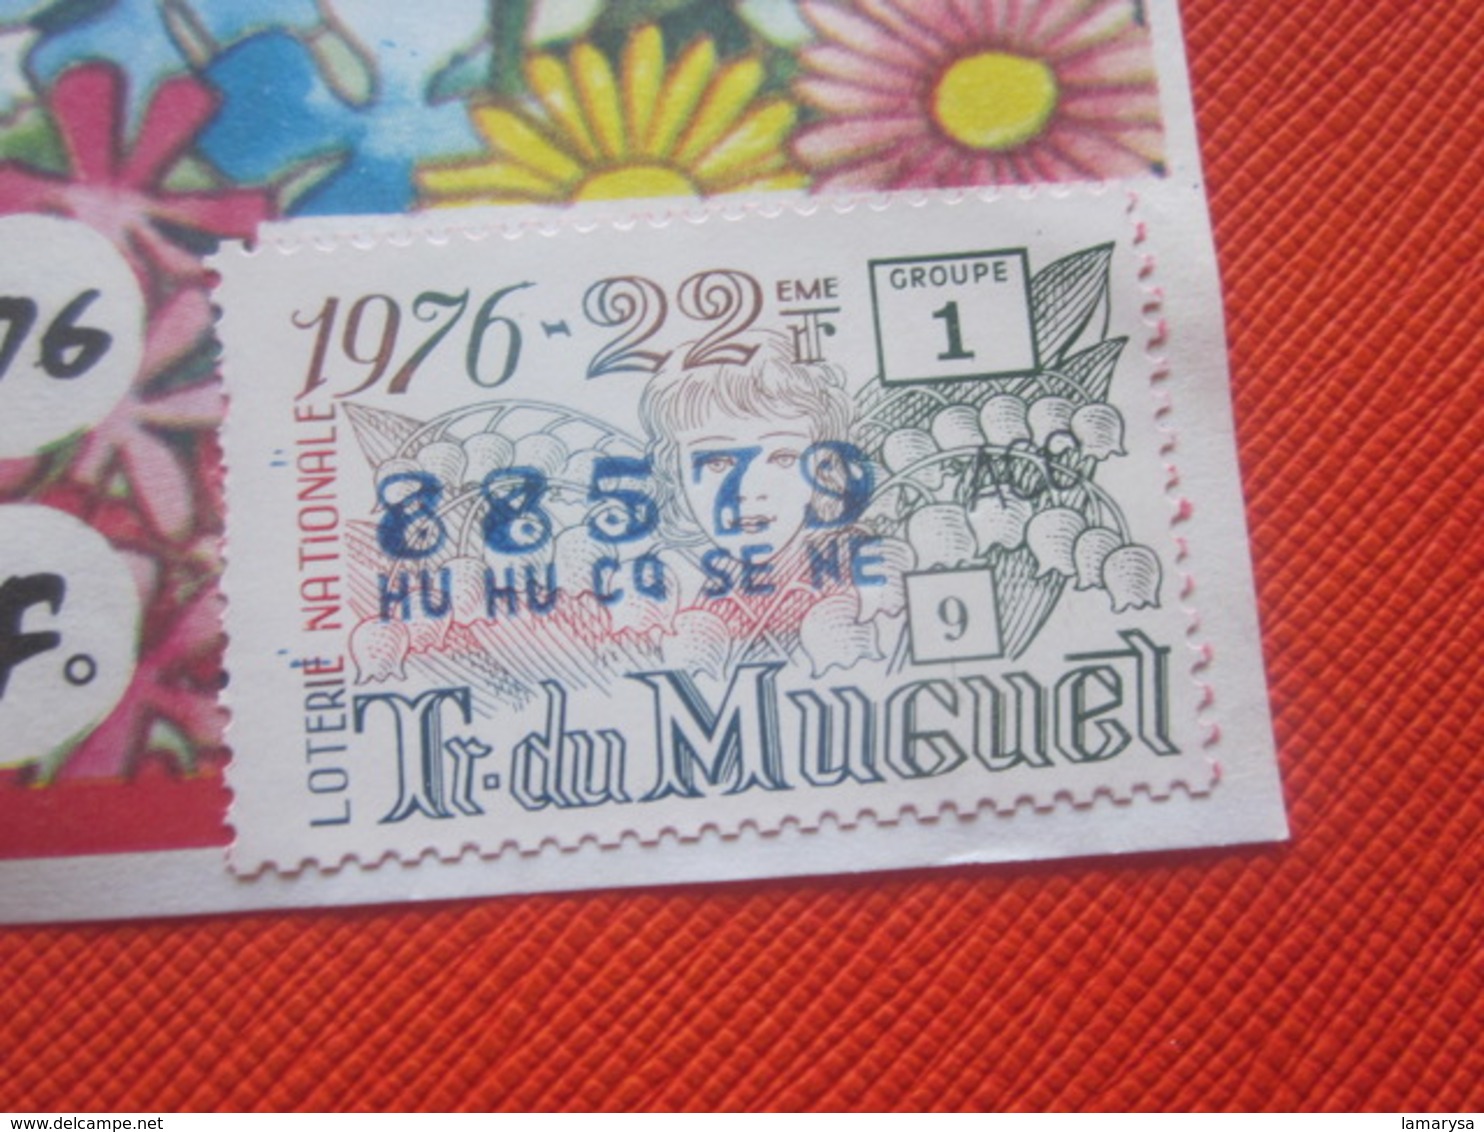 1976-1/10é ROSA--TRANCHE DU MUGUET -EUROSUD-Billet De La Loterie Nationale+VIGNETTE-IMPRIMÉE TAILLE DOUCE - Billets De Loterie